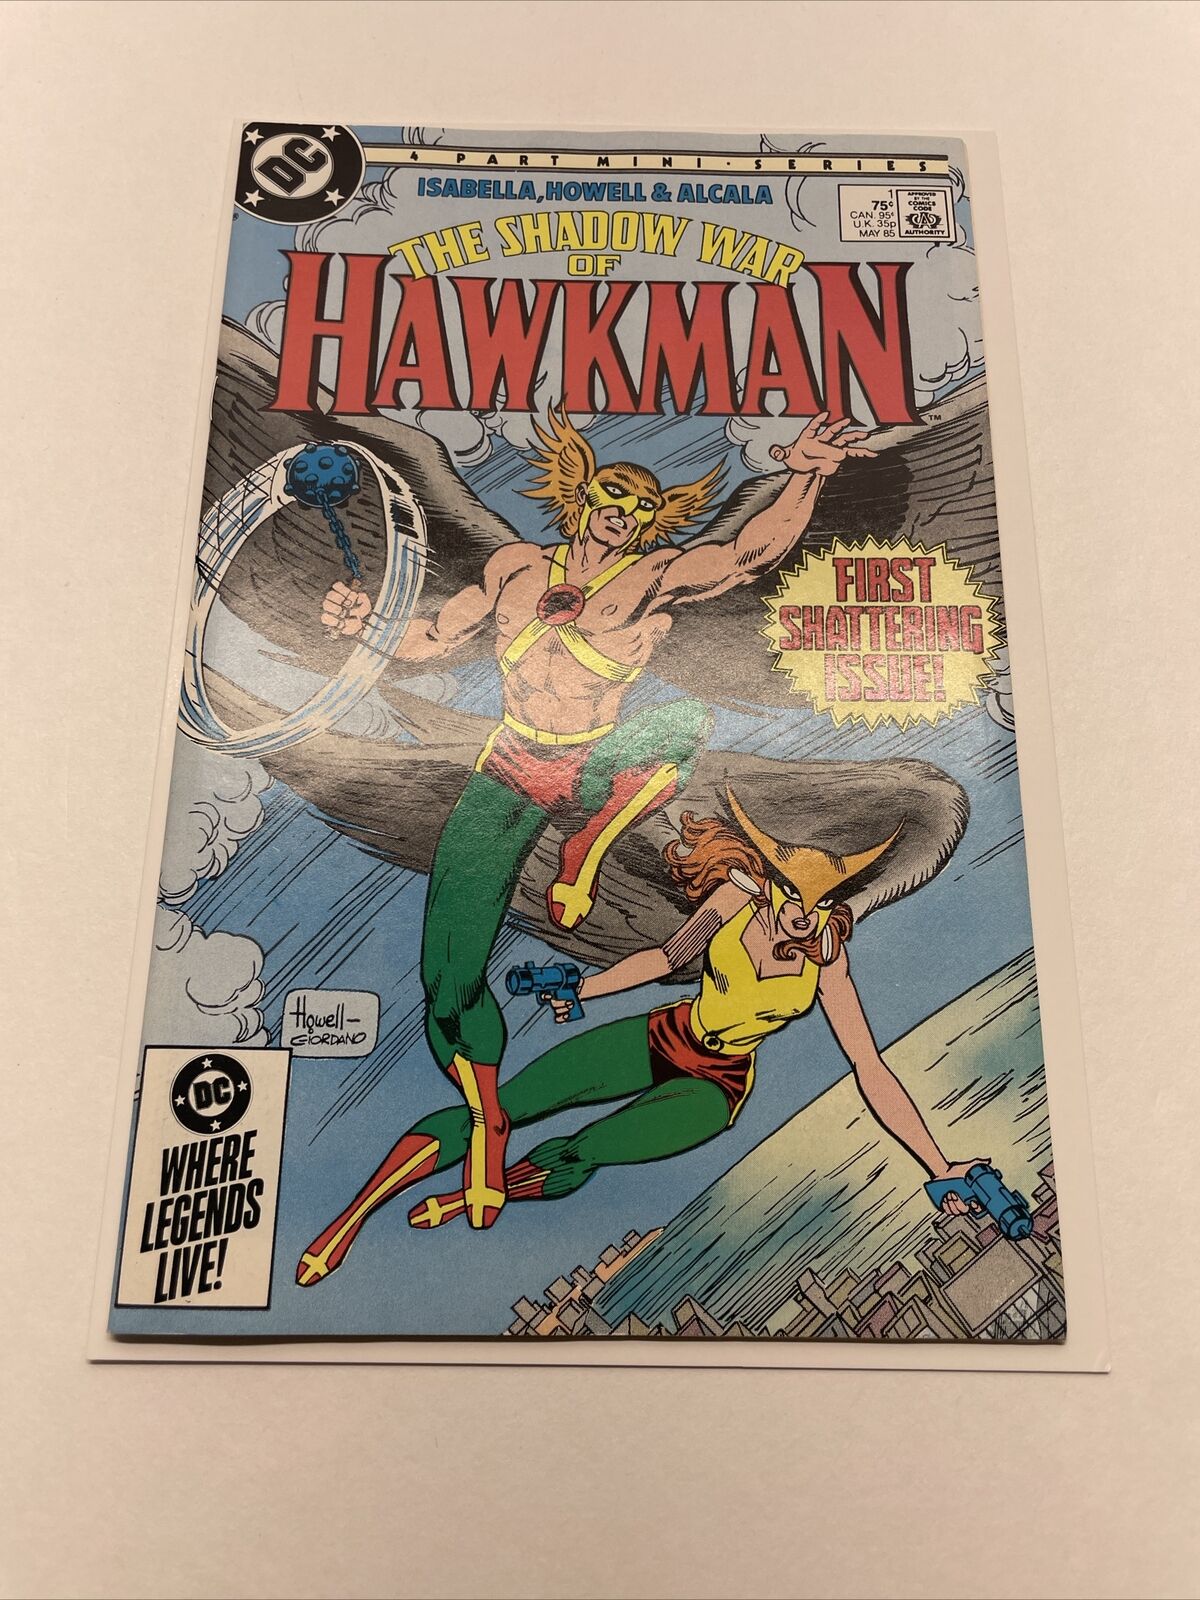 1985 DC Comics The Shadow War of HAWKMAN #1 Mini-Series